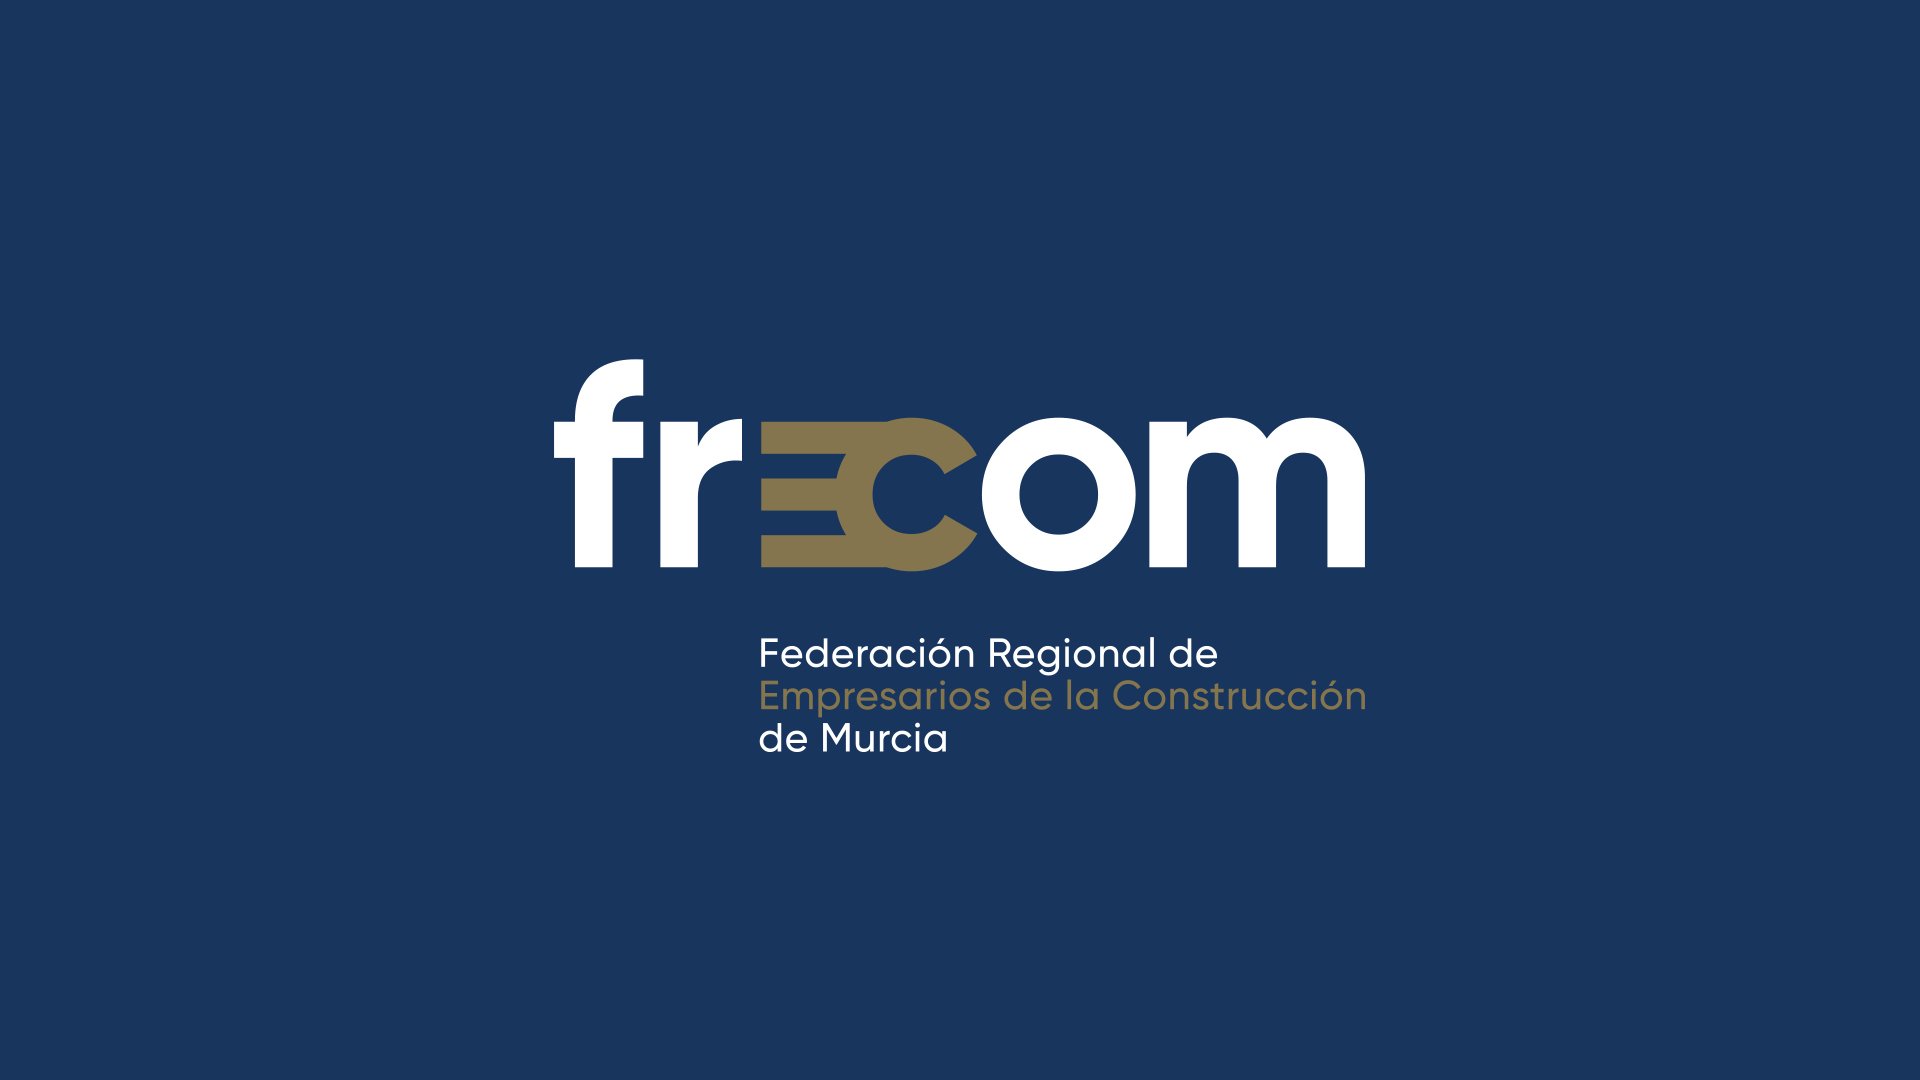 (c) Frecom.com